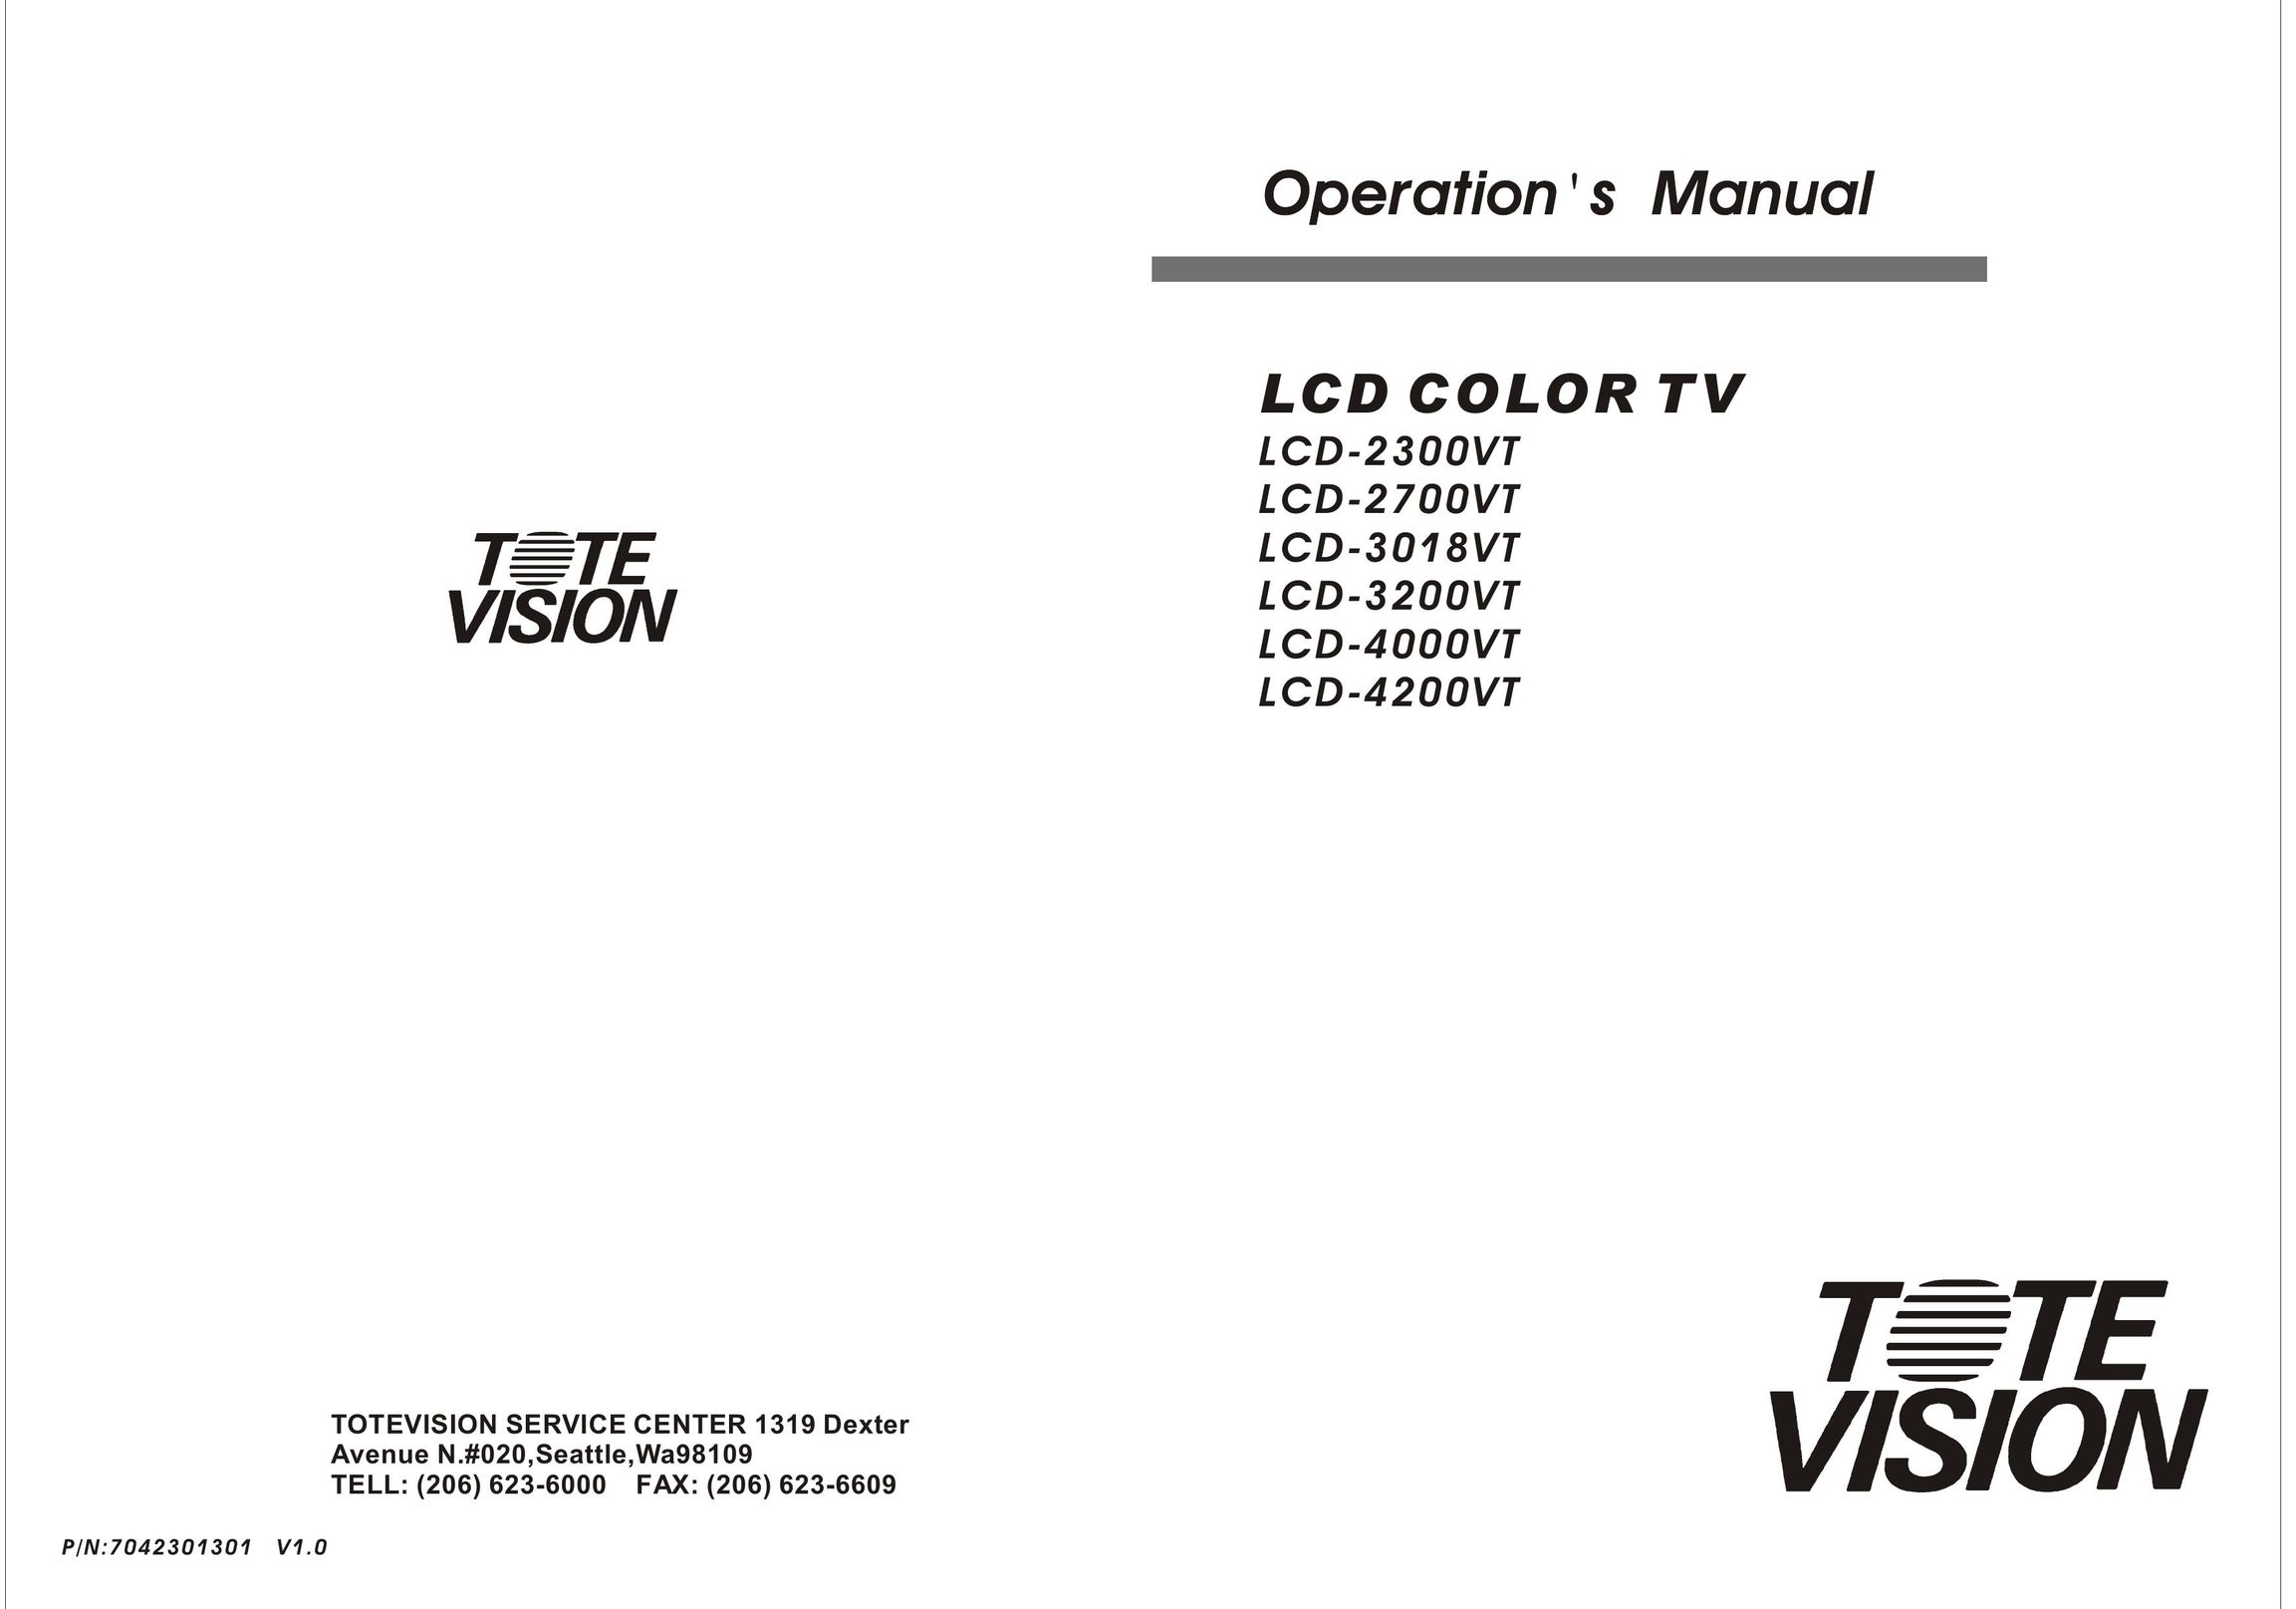 Tote Vision LCD-2700VT Flat Panel Television User Manual